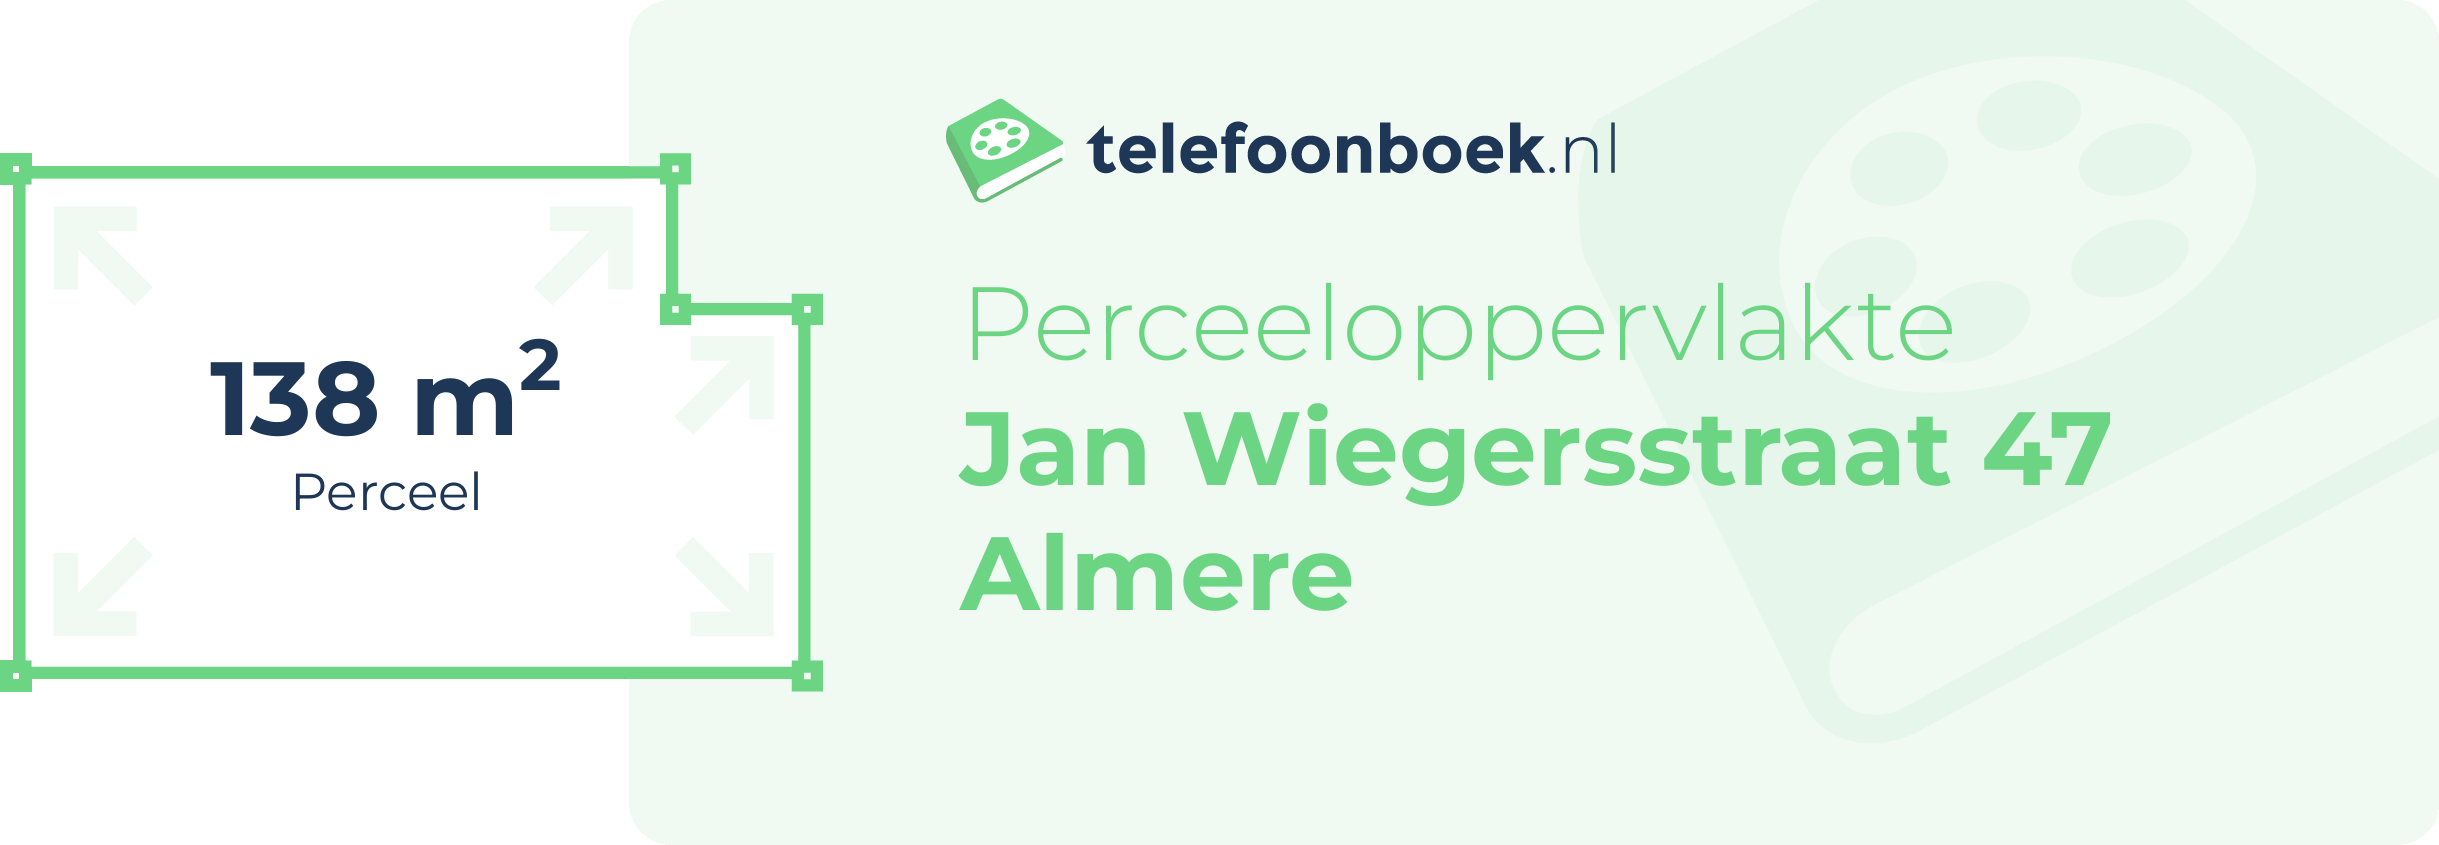 Perceeloppervlakte Jan Wiegersstraat 47 Almere